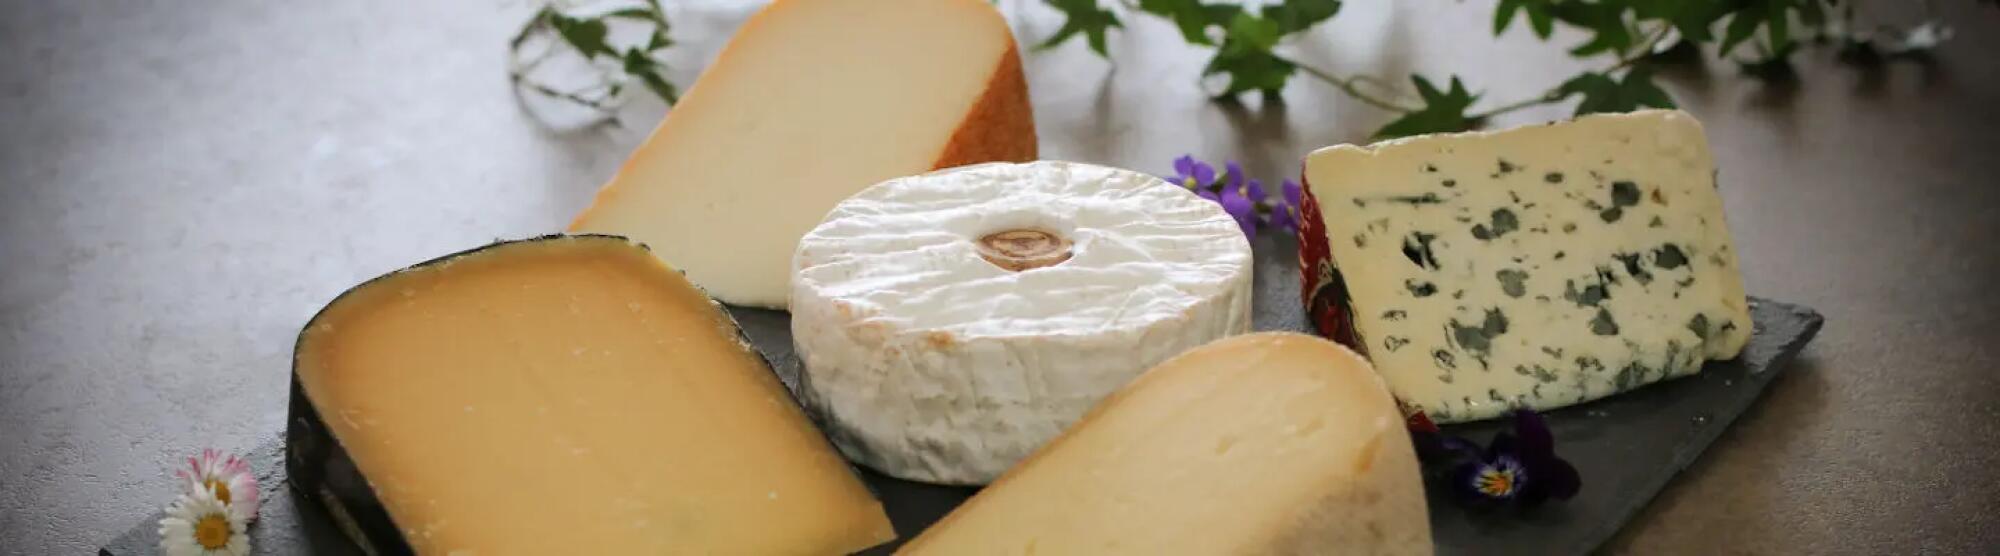 LA02_plateau-fromages-coupe